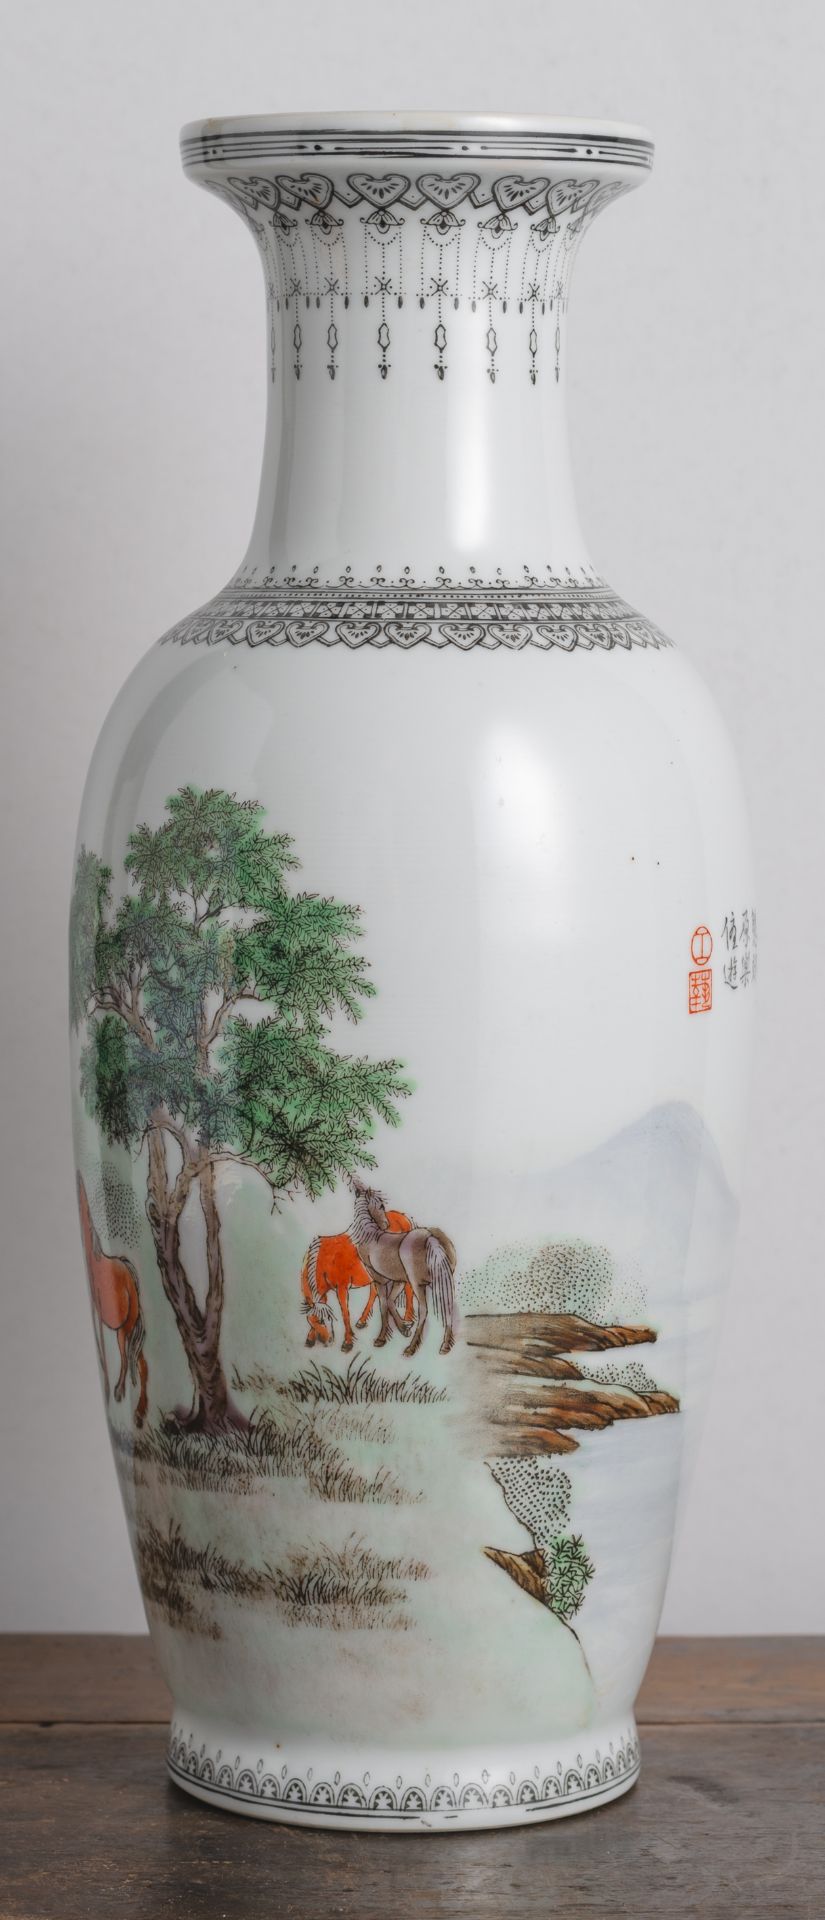 Balustervase aus Porzellan mit polychromem Dekor von acht Pferden und Gedichtaufschriften - Bild 4 aus 6